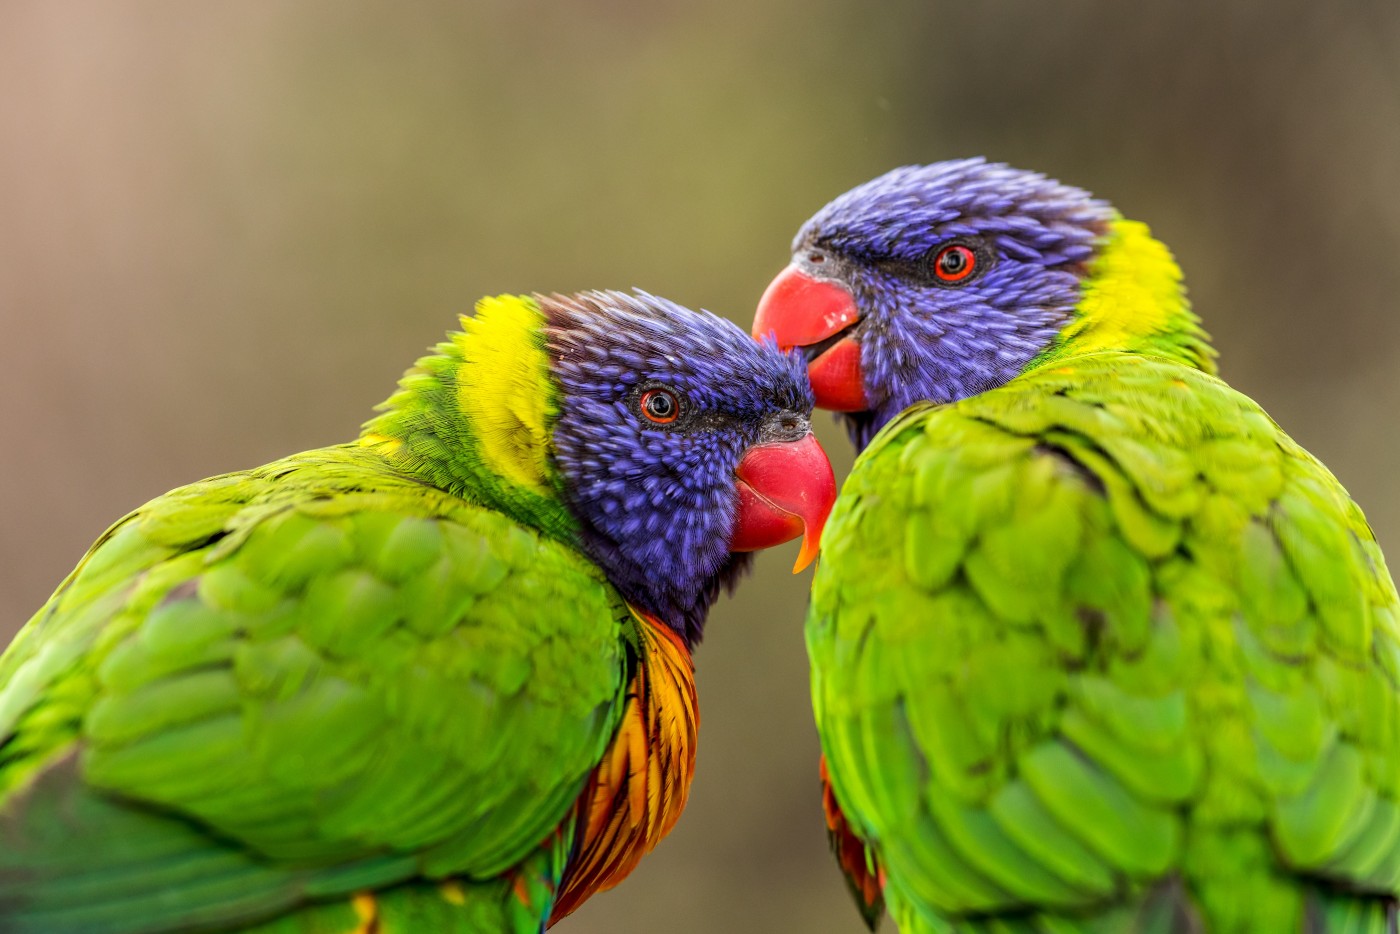 网站首页 - 图库素材 - 艺术摄影 图片信息简介:蜷缩在一起的绿毛鹦鹉